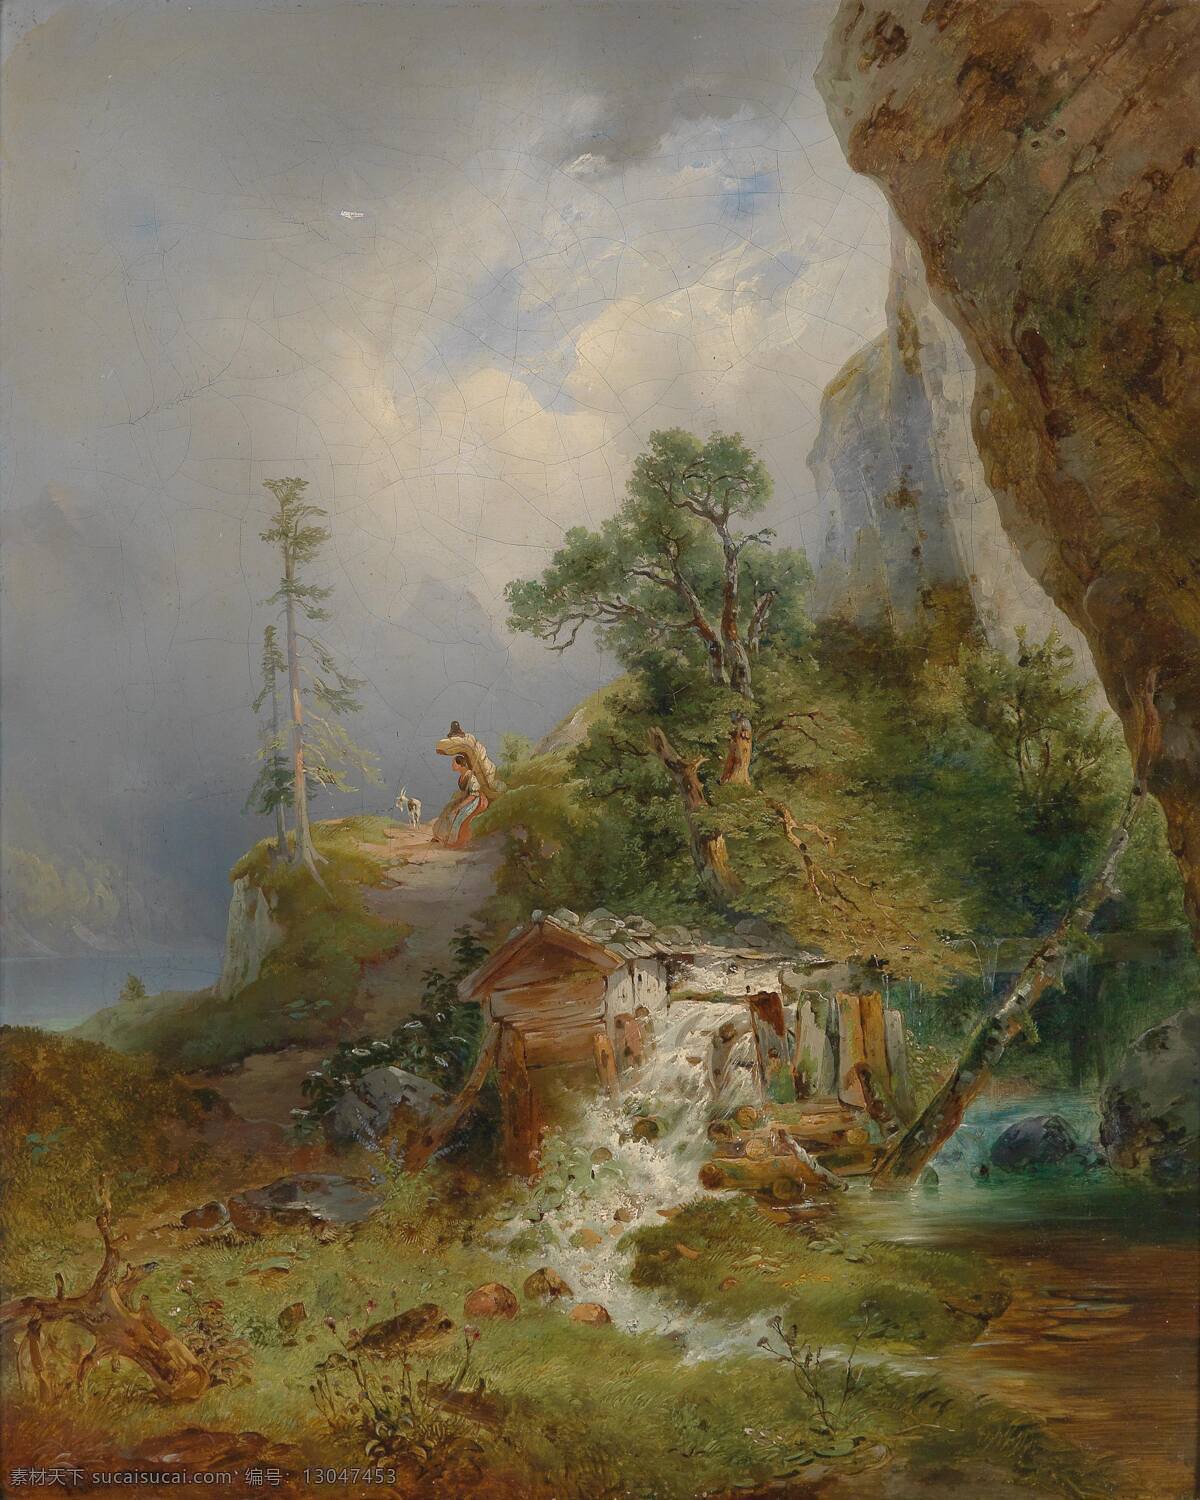 小憩 自然景观 小溪 水流湍急 山坡上 一女子 休息 一只山羊 吃草 树木从生 百草丰茂 19世纪油画 油画 文化艺术 绘画书法